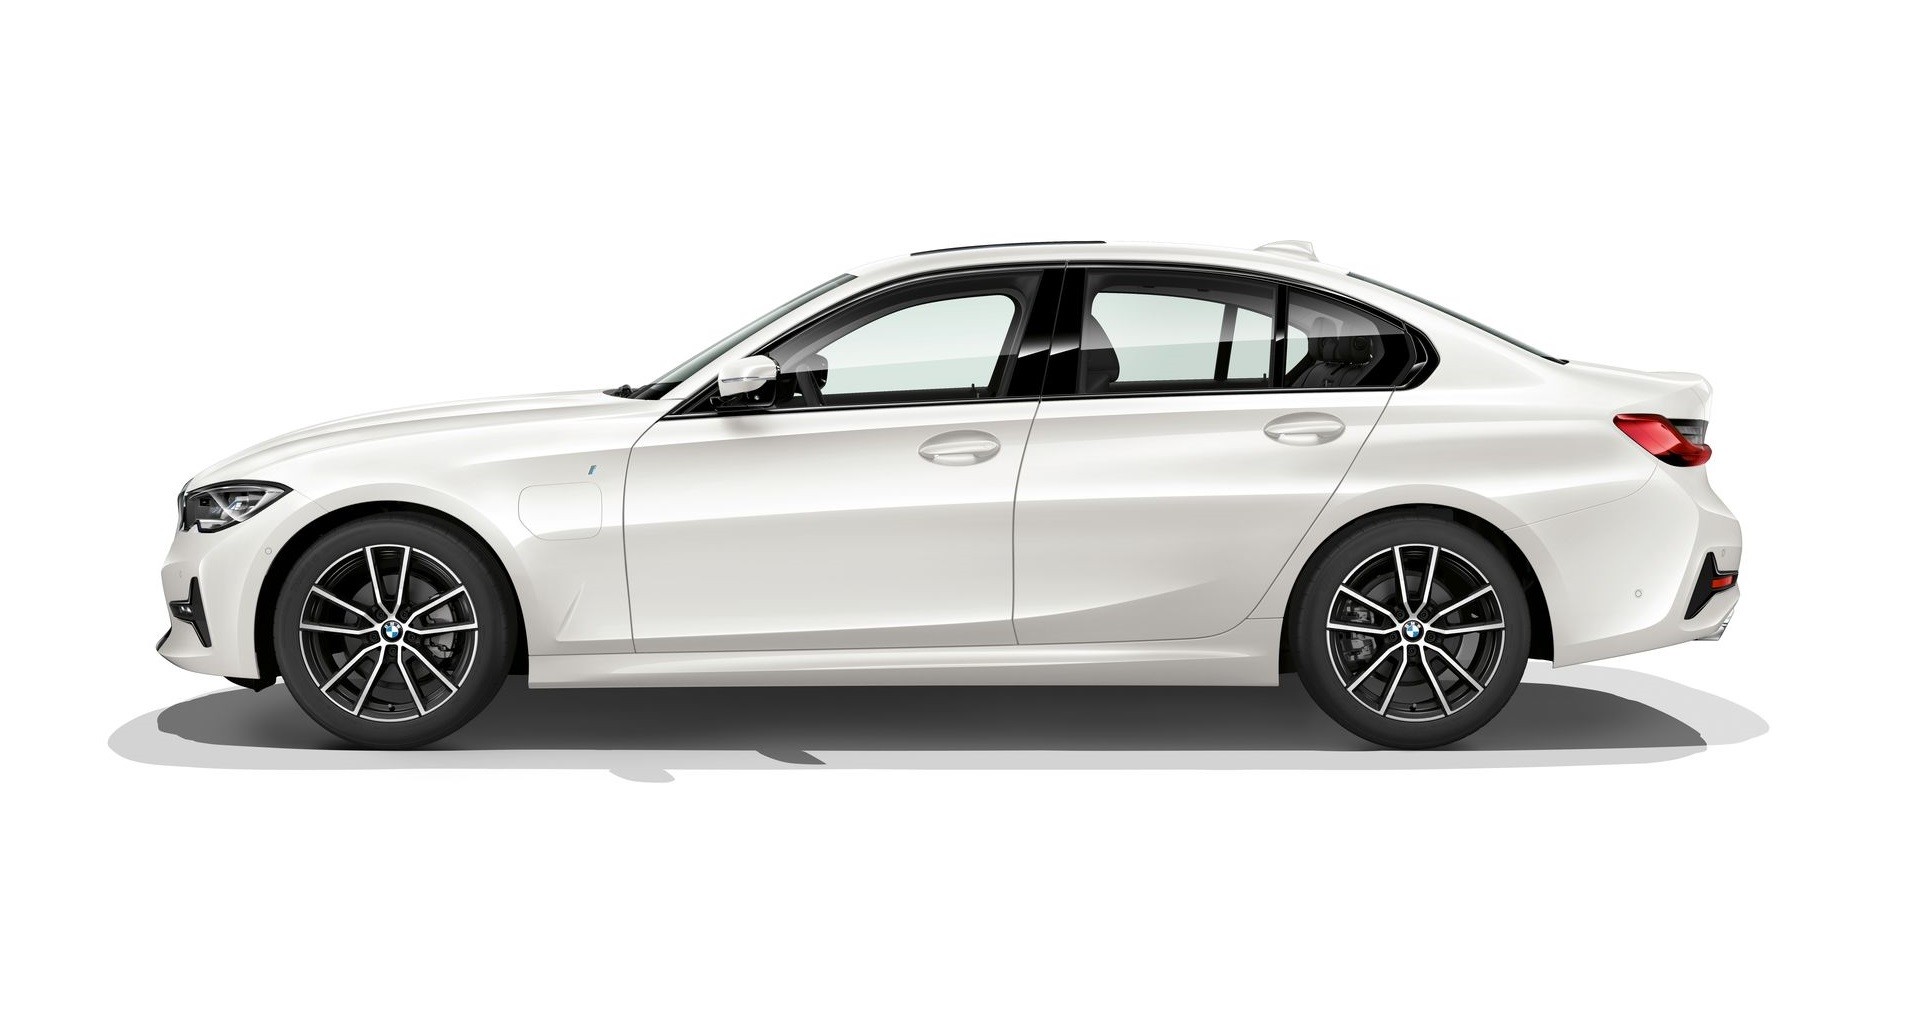 Ontmoedigd zijn in het midden van niets zeemijl 2020 BMW 330e iPerformance Confirmed With XtraBoost Mode - autoevolution